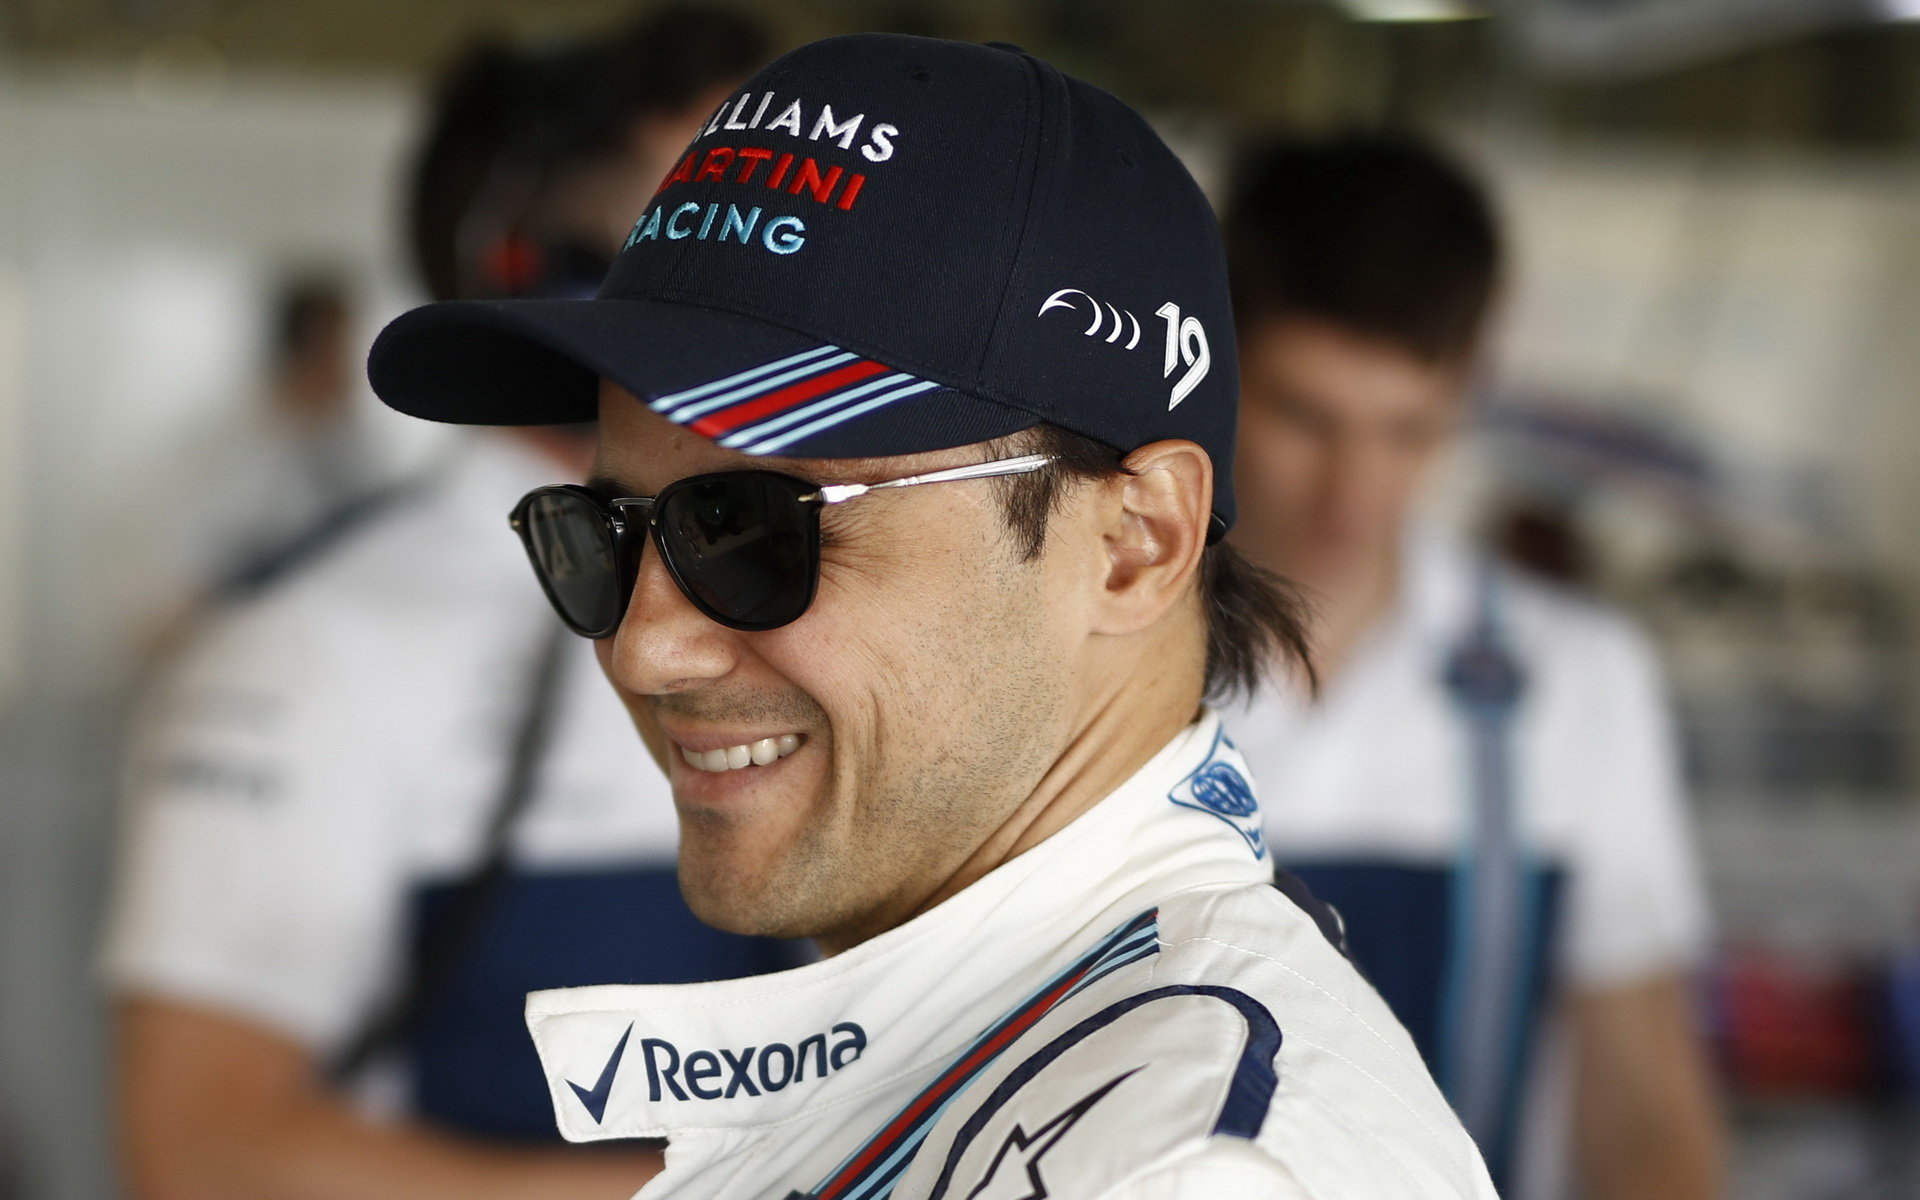 Felipe Massa je uvolněný a závodění si letos užívá